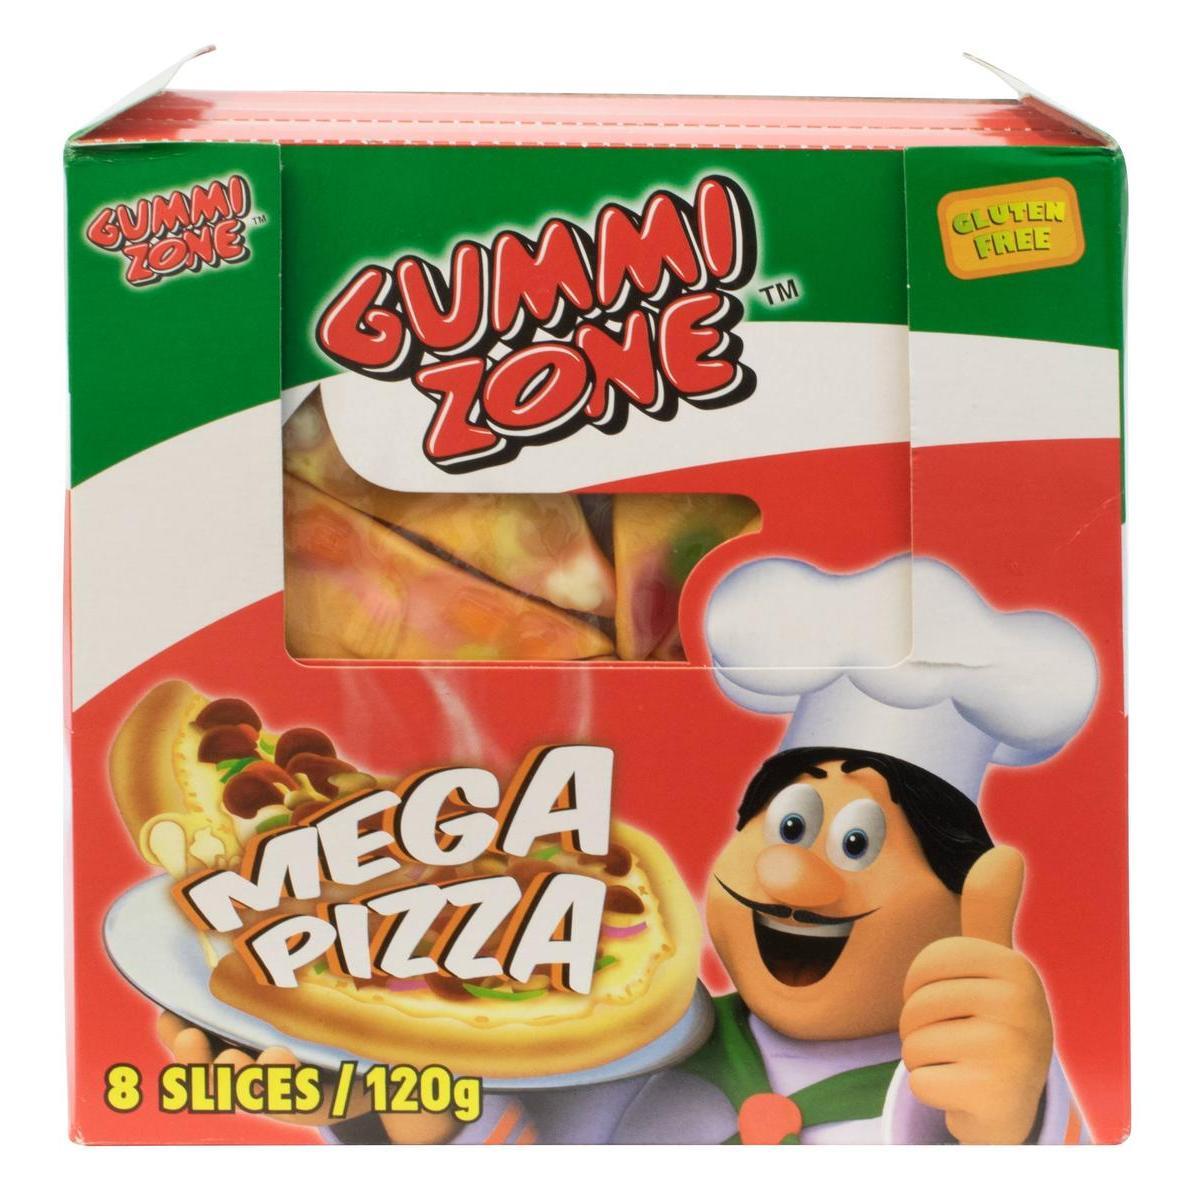 Gummi zone méga pizza - 120 g - L 19 x l 19 cm - Multicolore